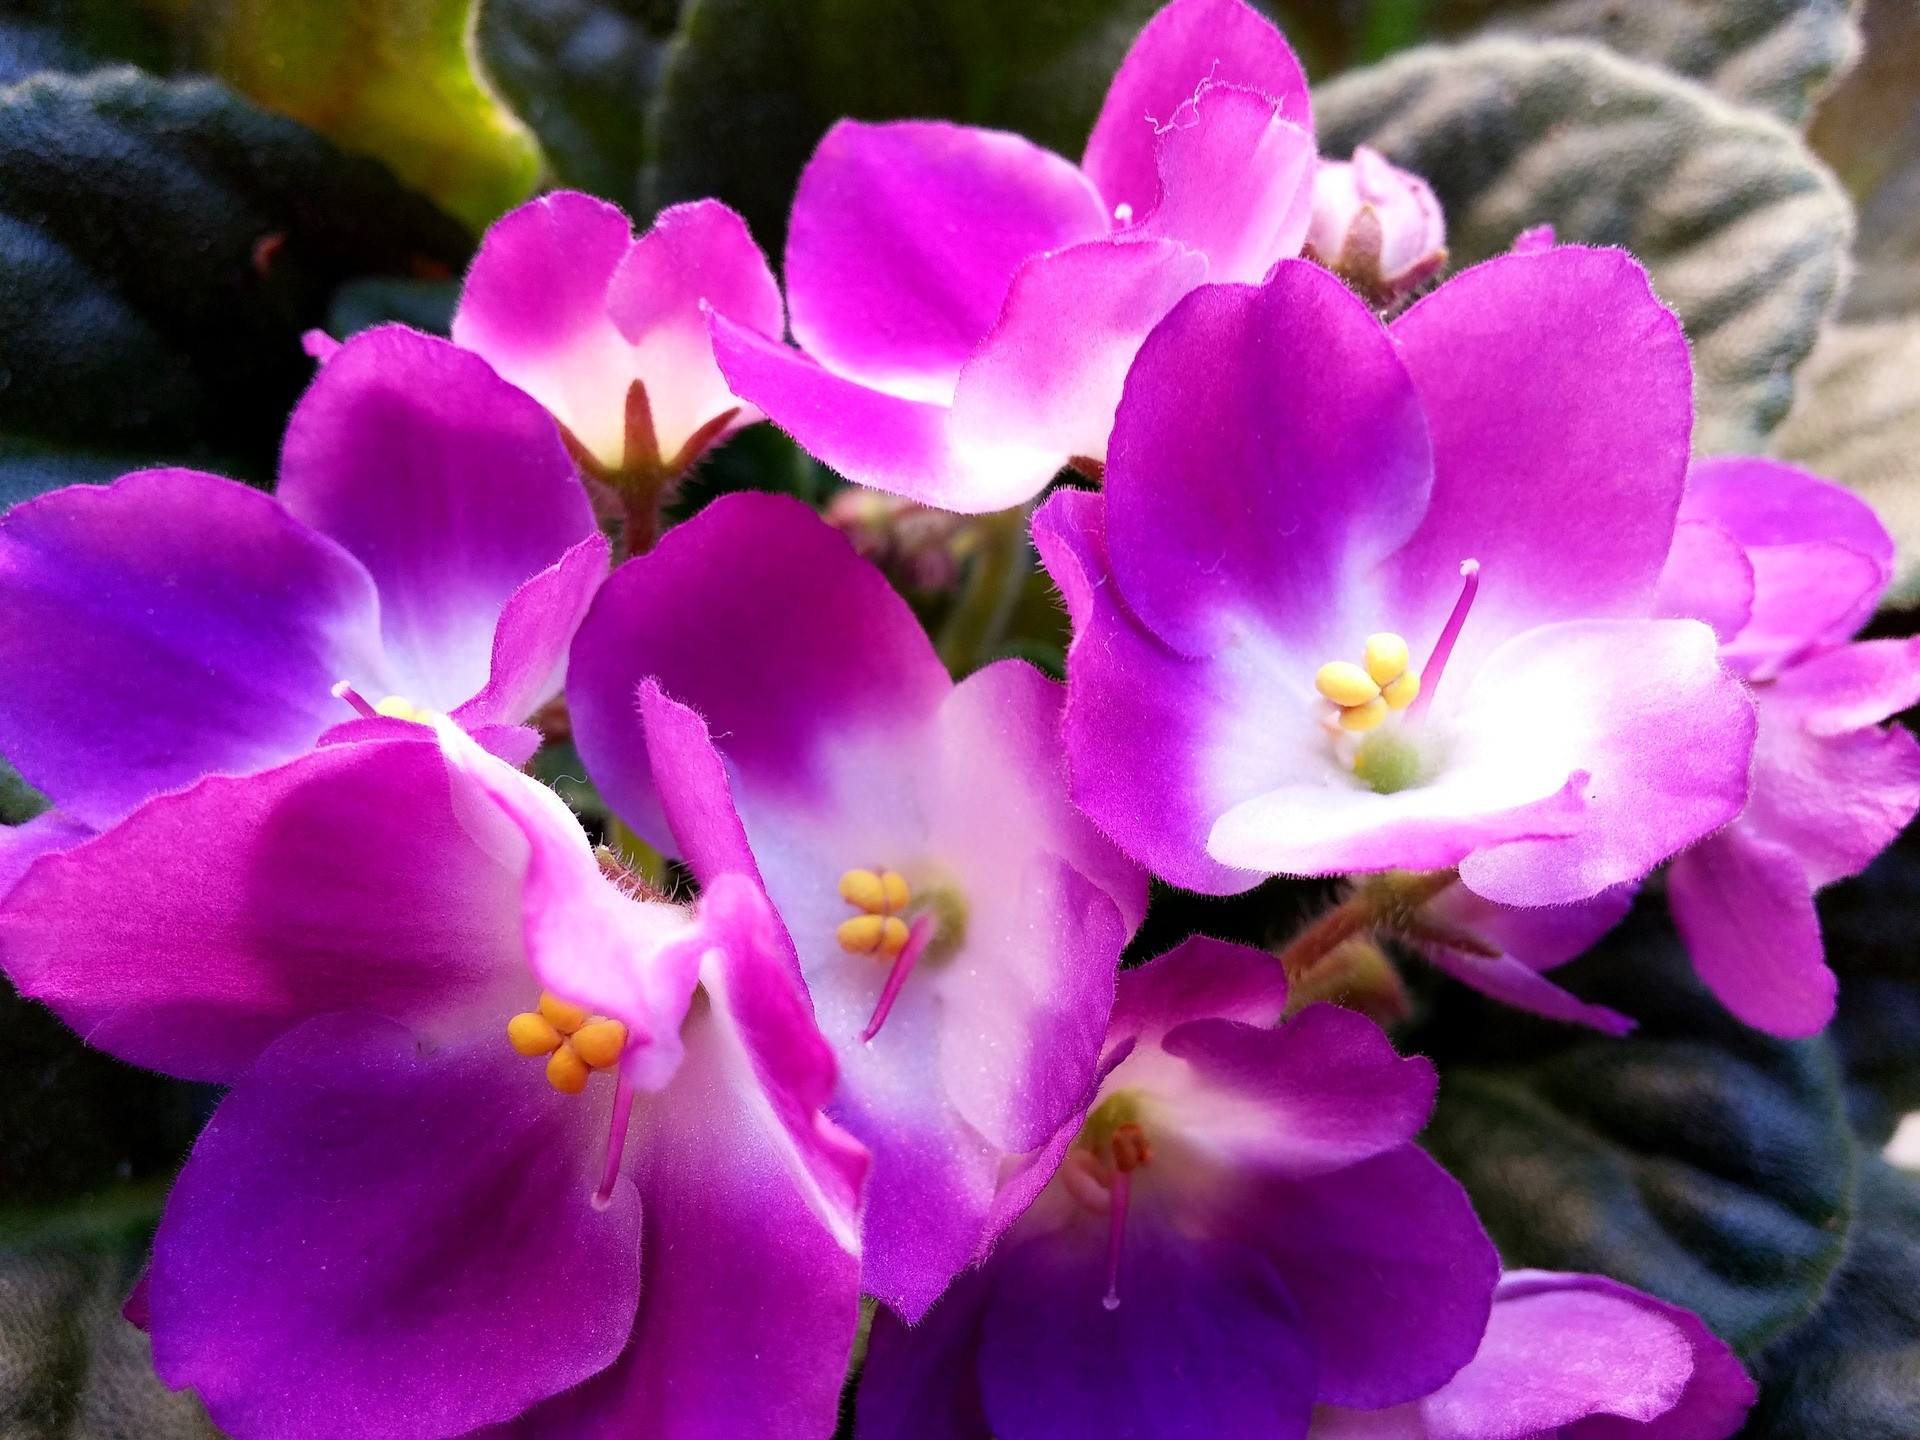 A violeta africana é uma das variedades mais comuns no mercado brasileiro (Foto: Pixabay / Creative Commons)